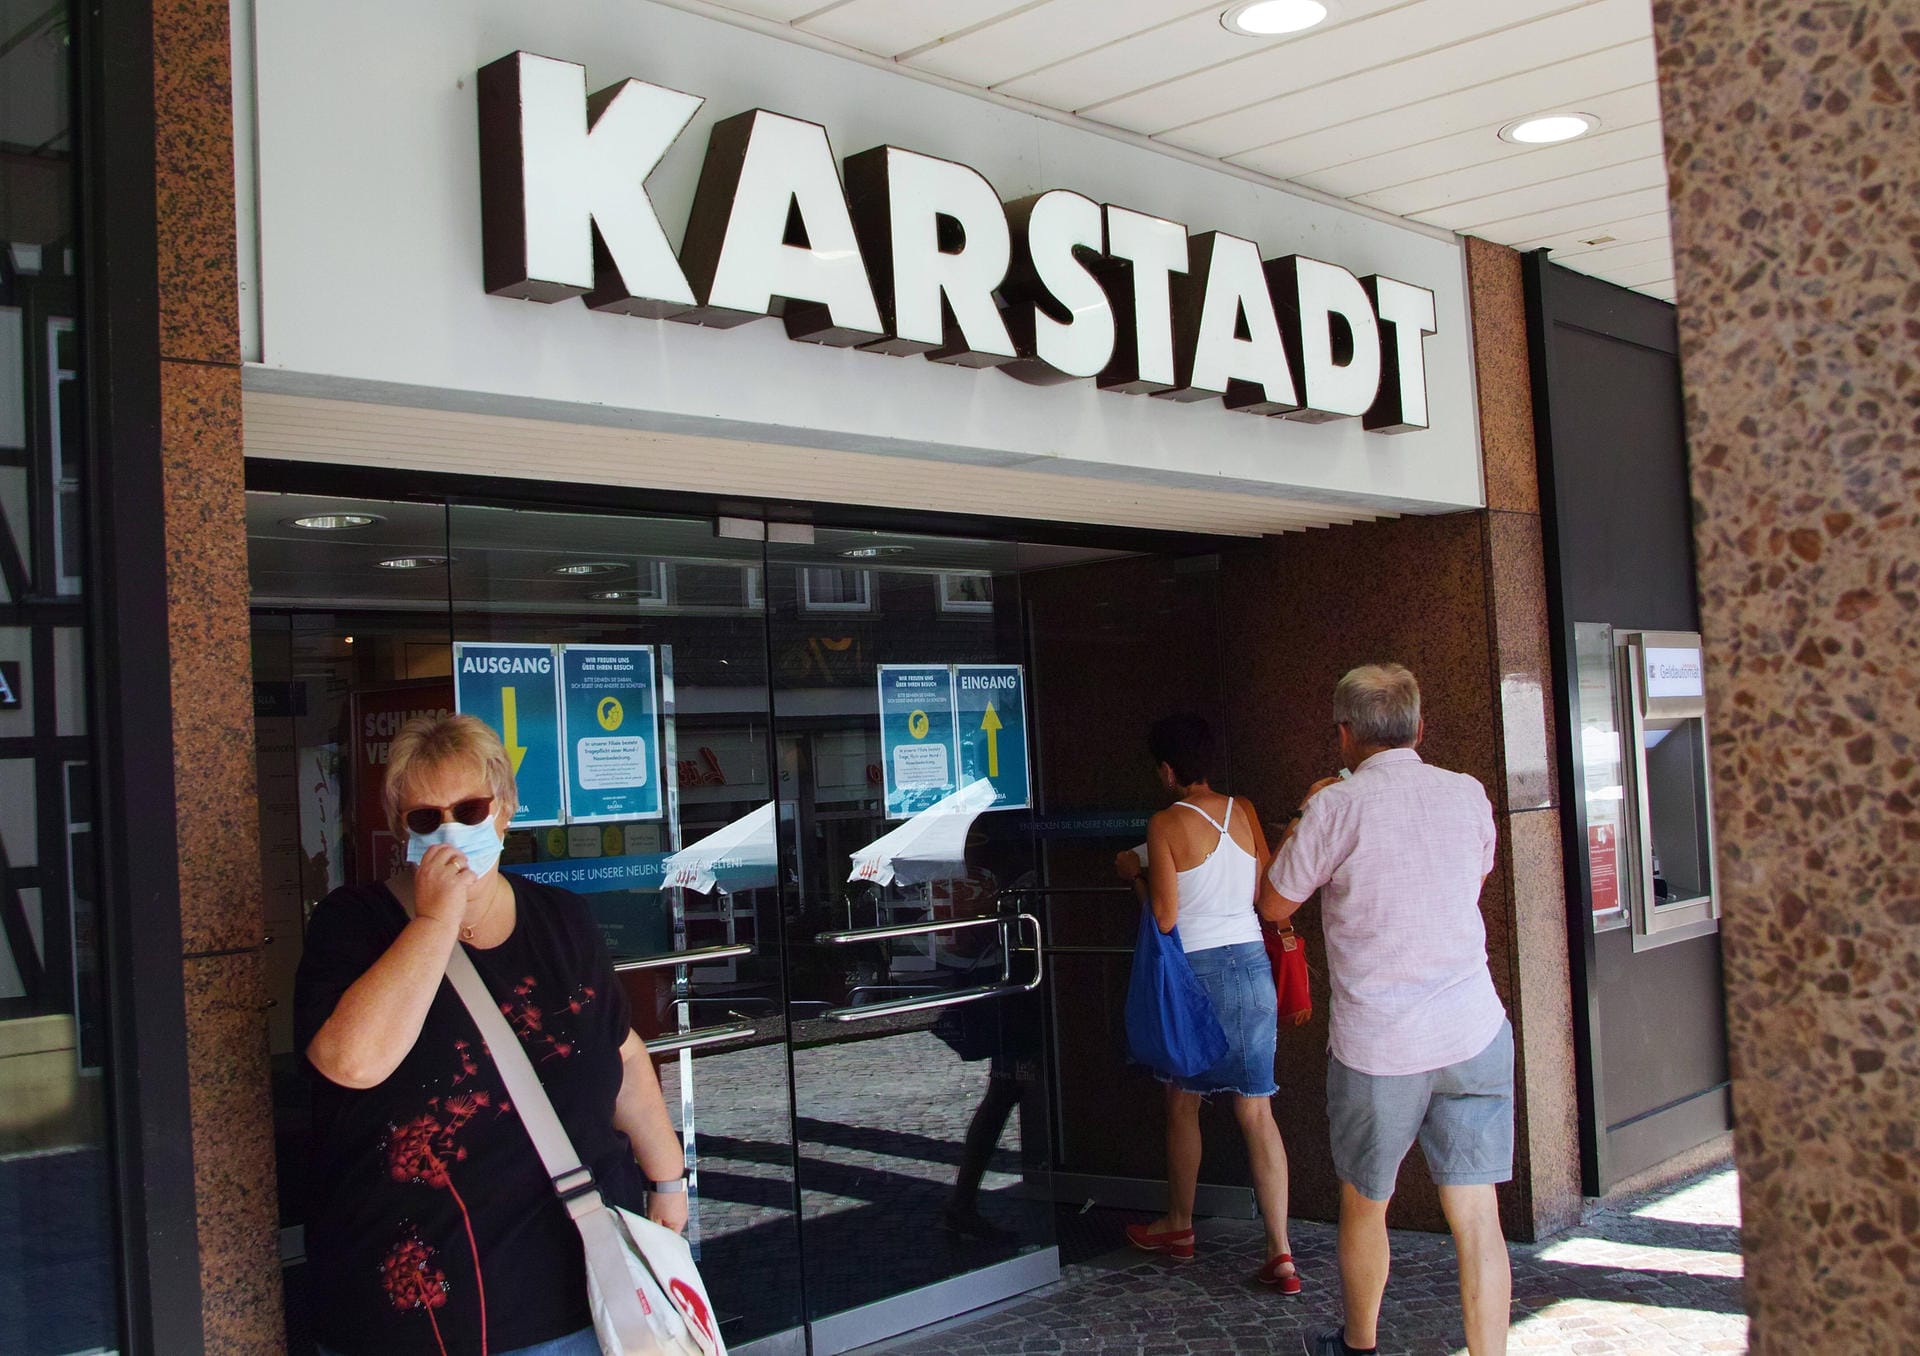 Erst das Insolvenzverfahren mit rund 40 Filialschließungen, dann Hunderte Millionen vom Staat: Galeria Karstadt Kaufhof steckt in der Dauerkrise. Und offenbar reicht das erste Darlehen nicht – es drohen neue Einsparungen.